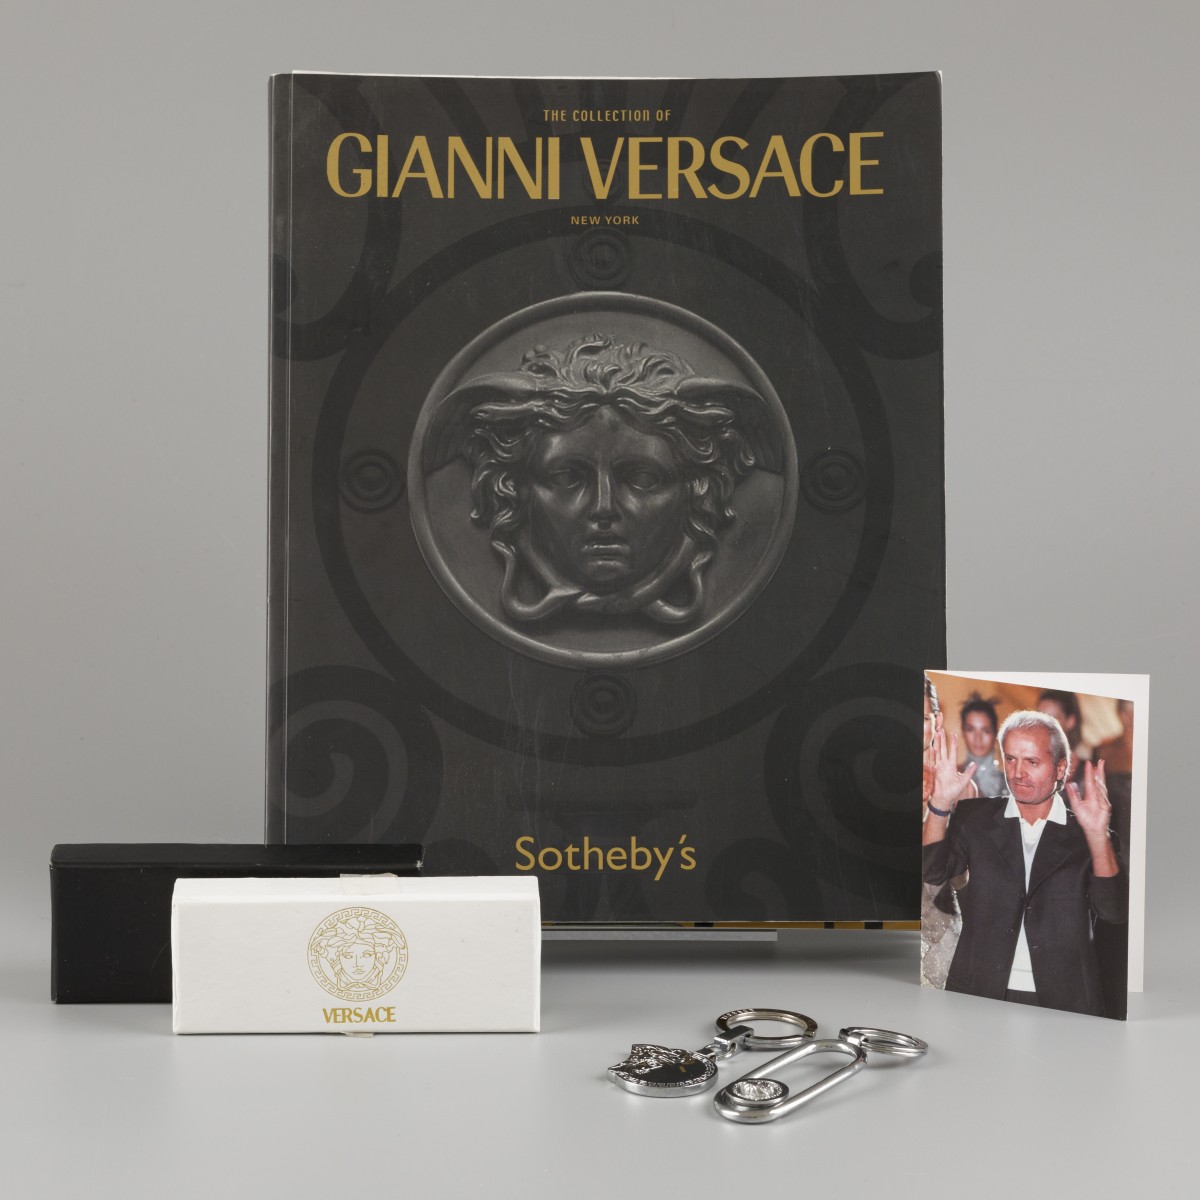 Een lot bestaande uit twee sleutelhangers, een bidprentje van Gianni Versace en de catalogus van de collectie van Gianni Versace (Sotheby's Mei 2005).